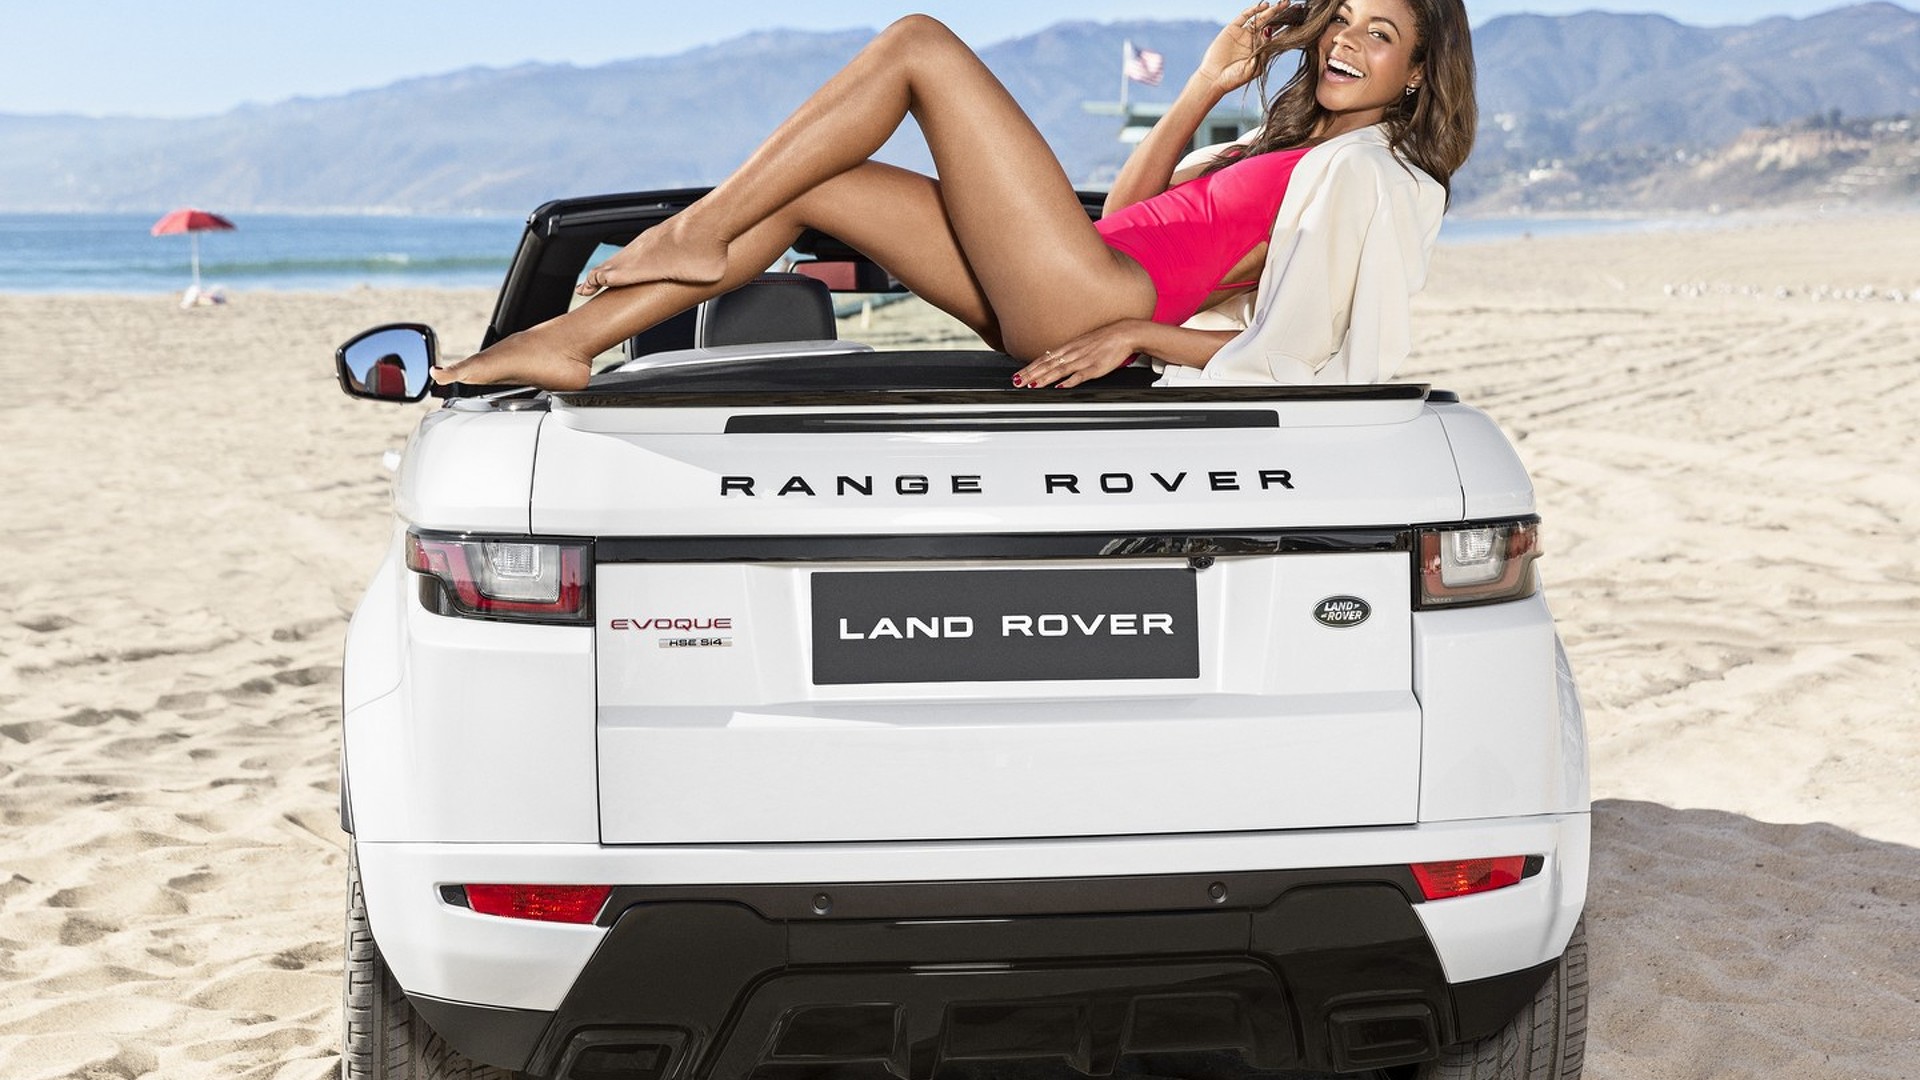 Price of Range Rover Evoque in Nigeria